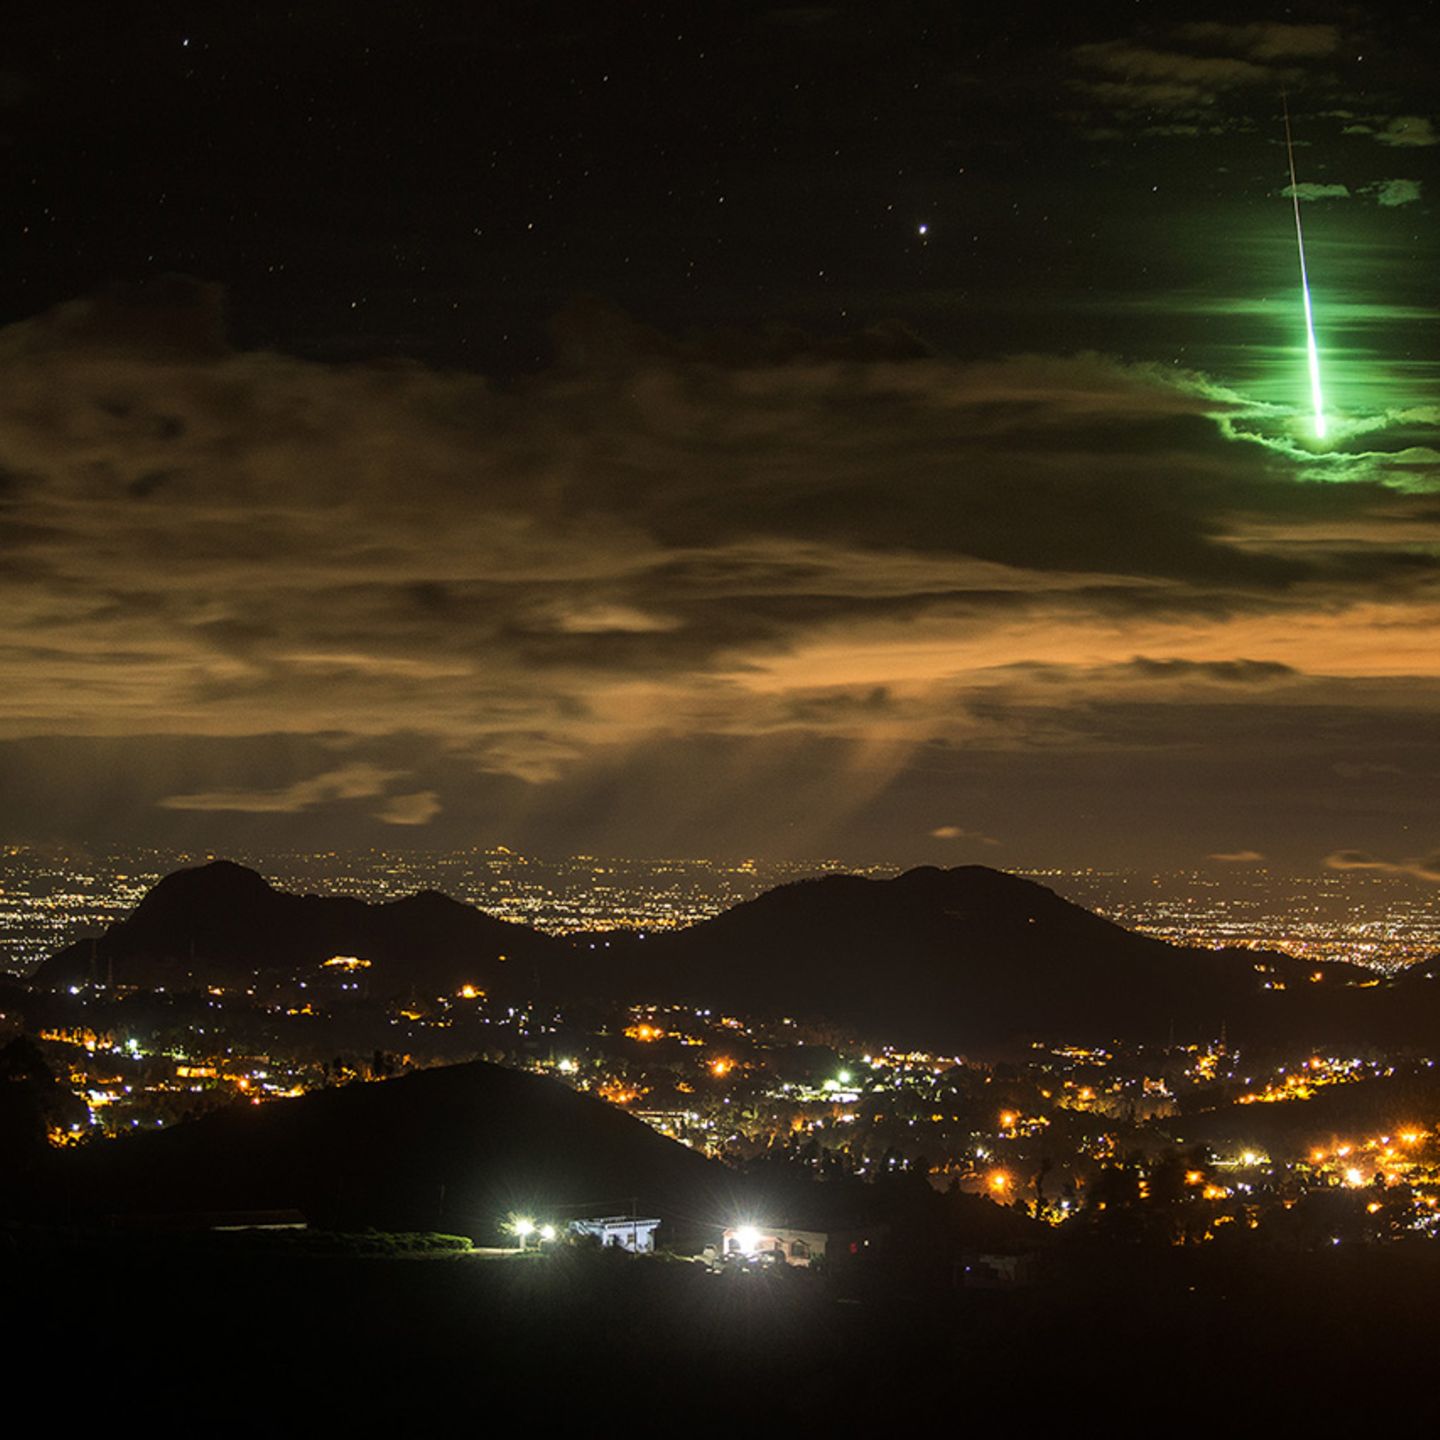 Gruner Meteor Fotograf Macht Sensationelles Bild Wahrend Er Schlaft Geo